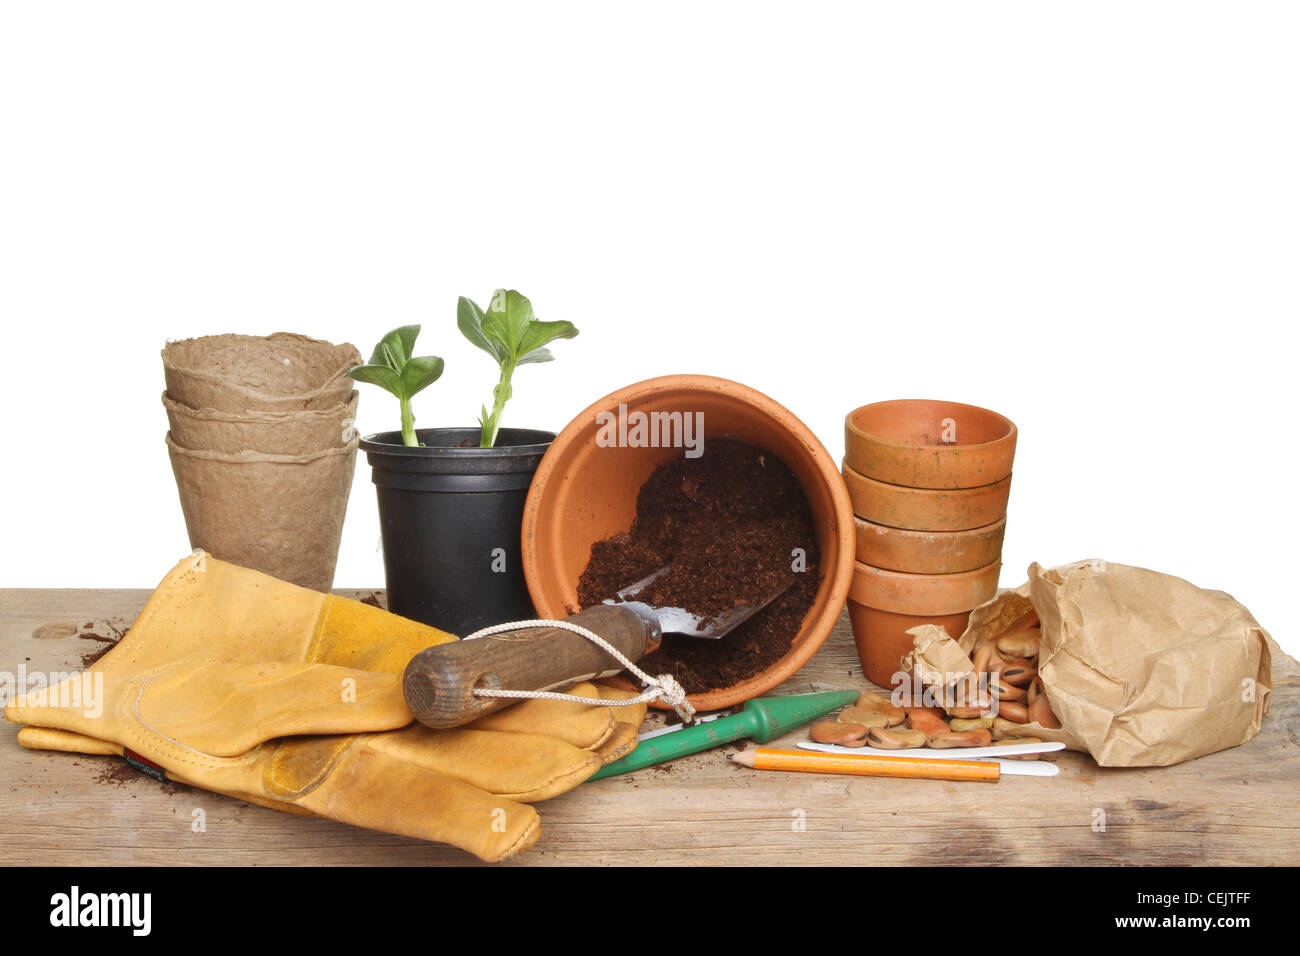 Unter dem Motto Stilleben Gartenarbeit, Gartengeräte, Setzling Pflanzen, Töpfe, Kompost und Samen auf einer Holzbank Blumenerde Stockfoto